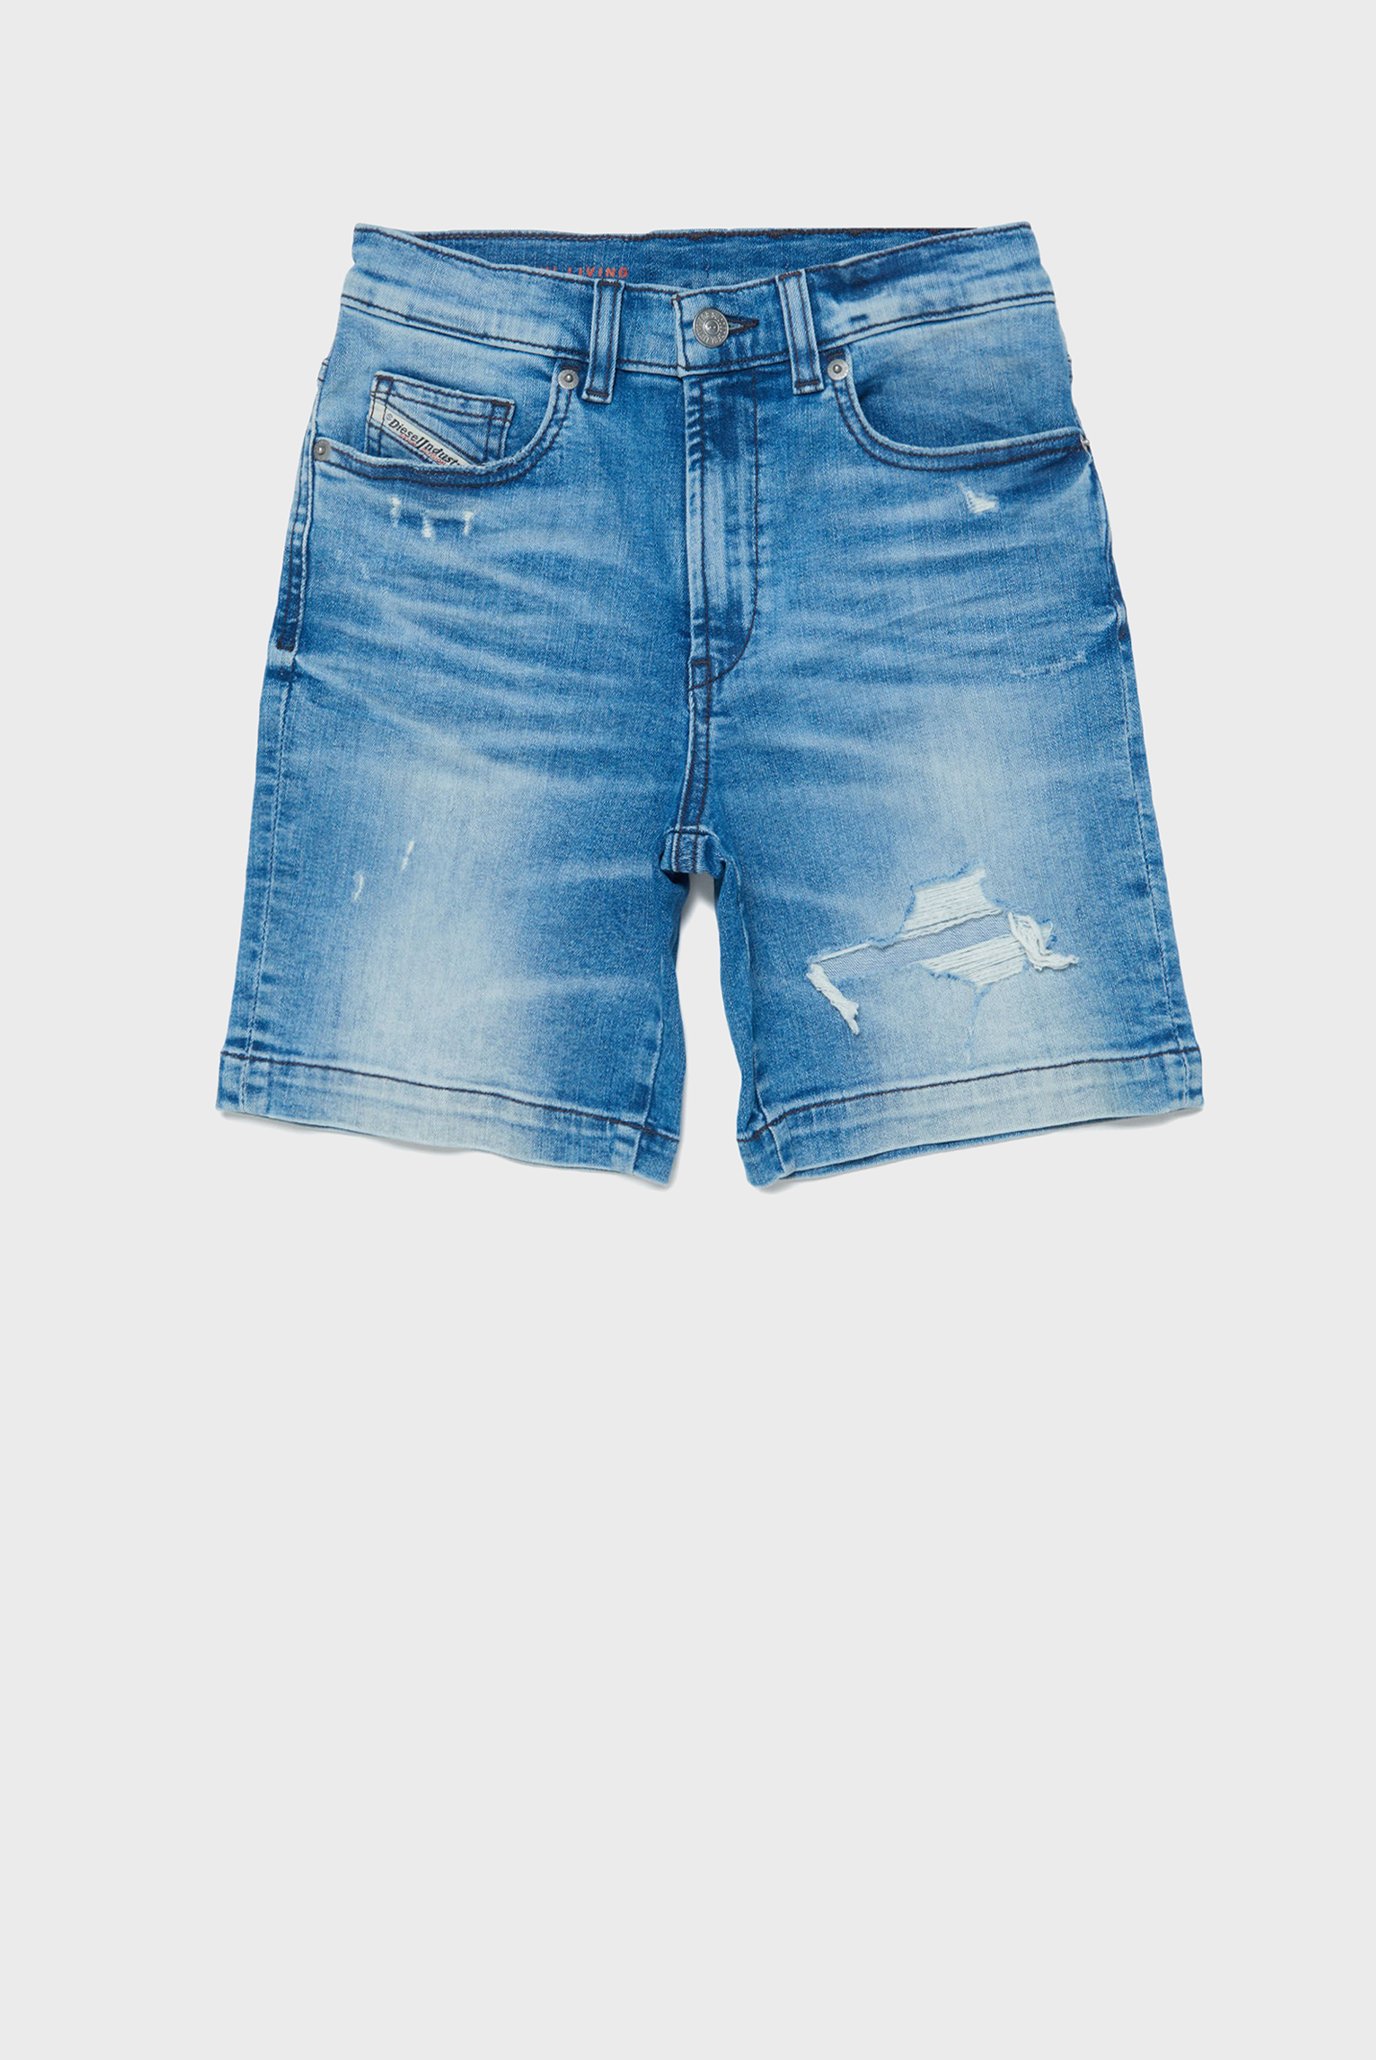 Дитячі сині джинсові шорти D-MACS-SH-J SHORTS 1